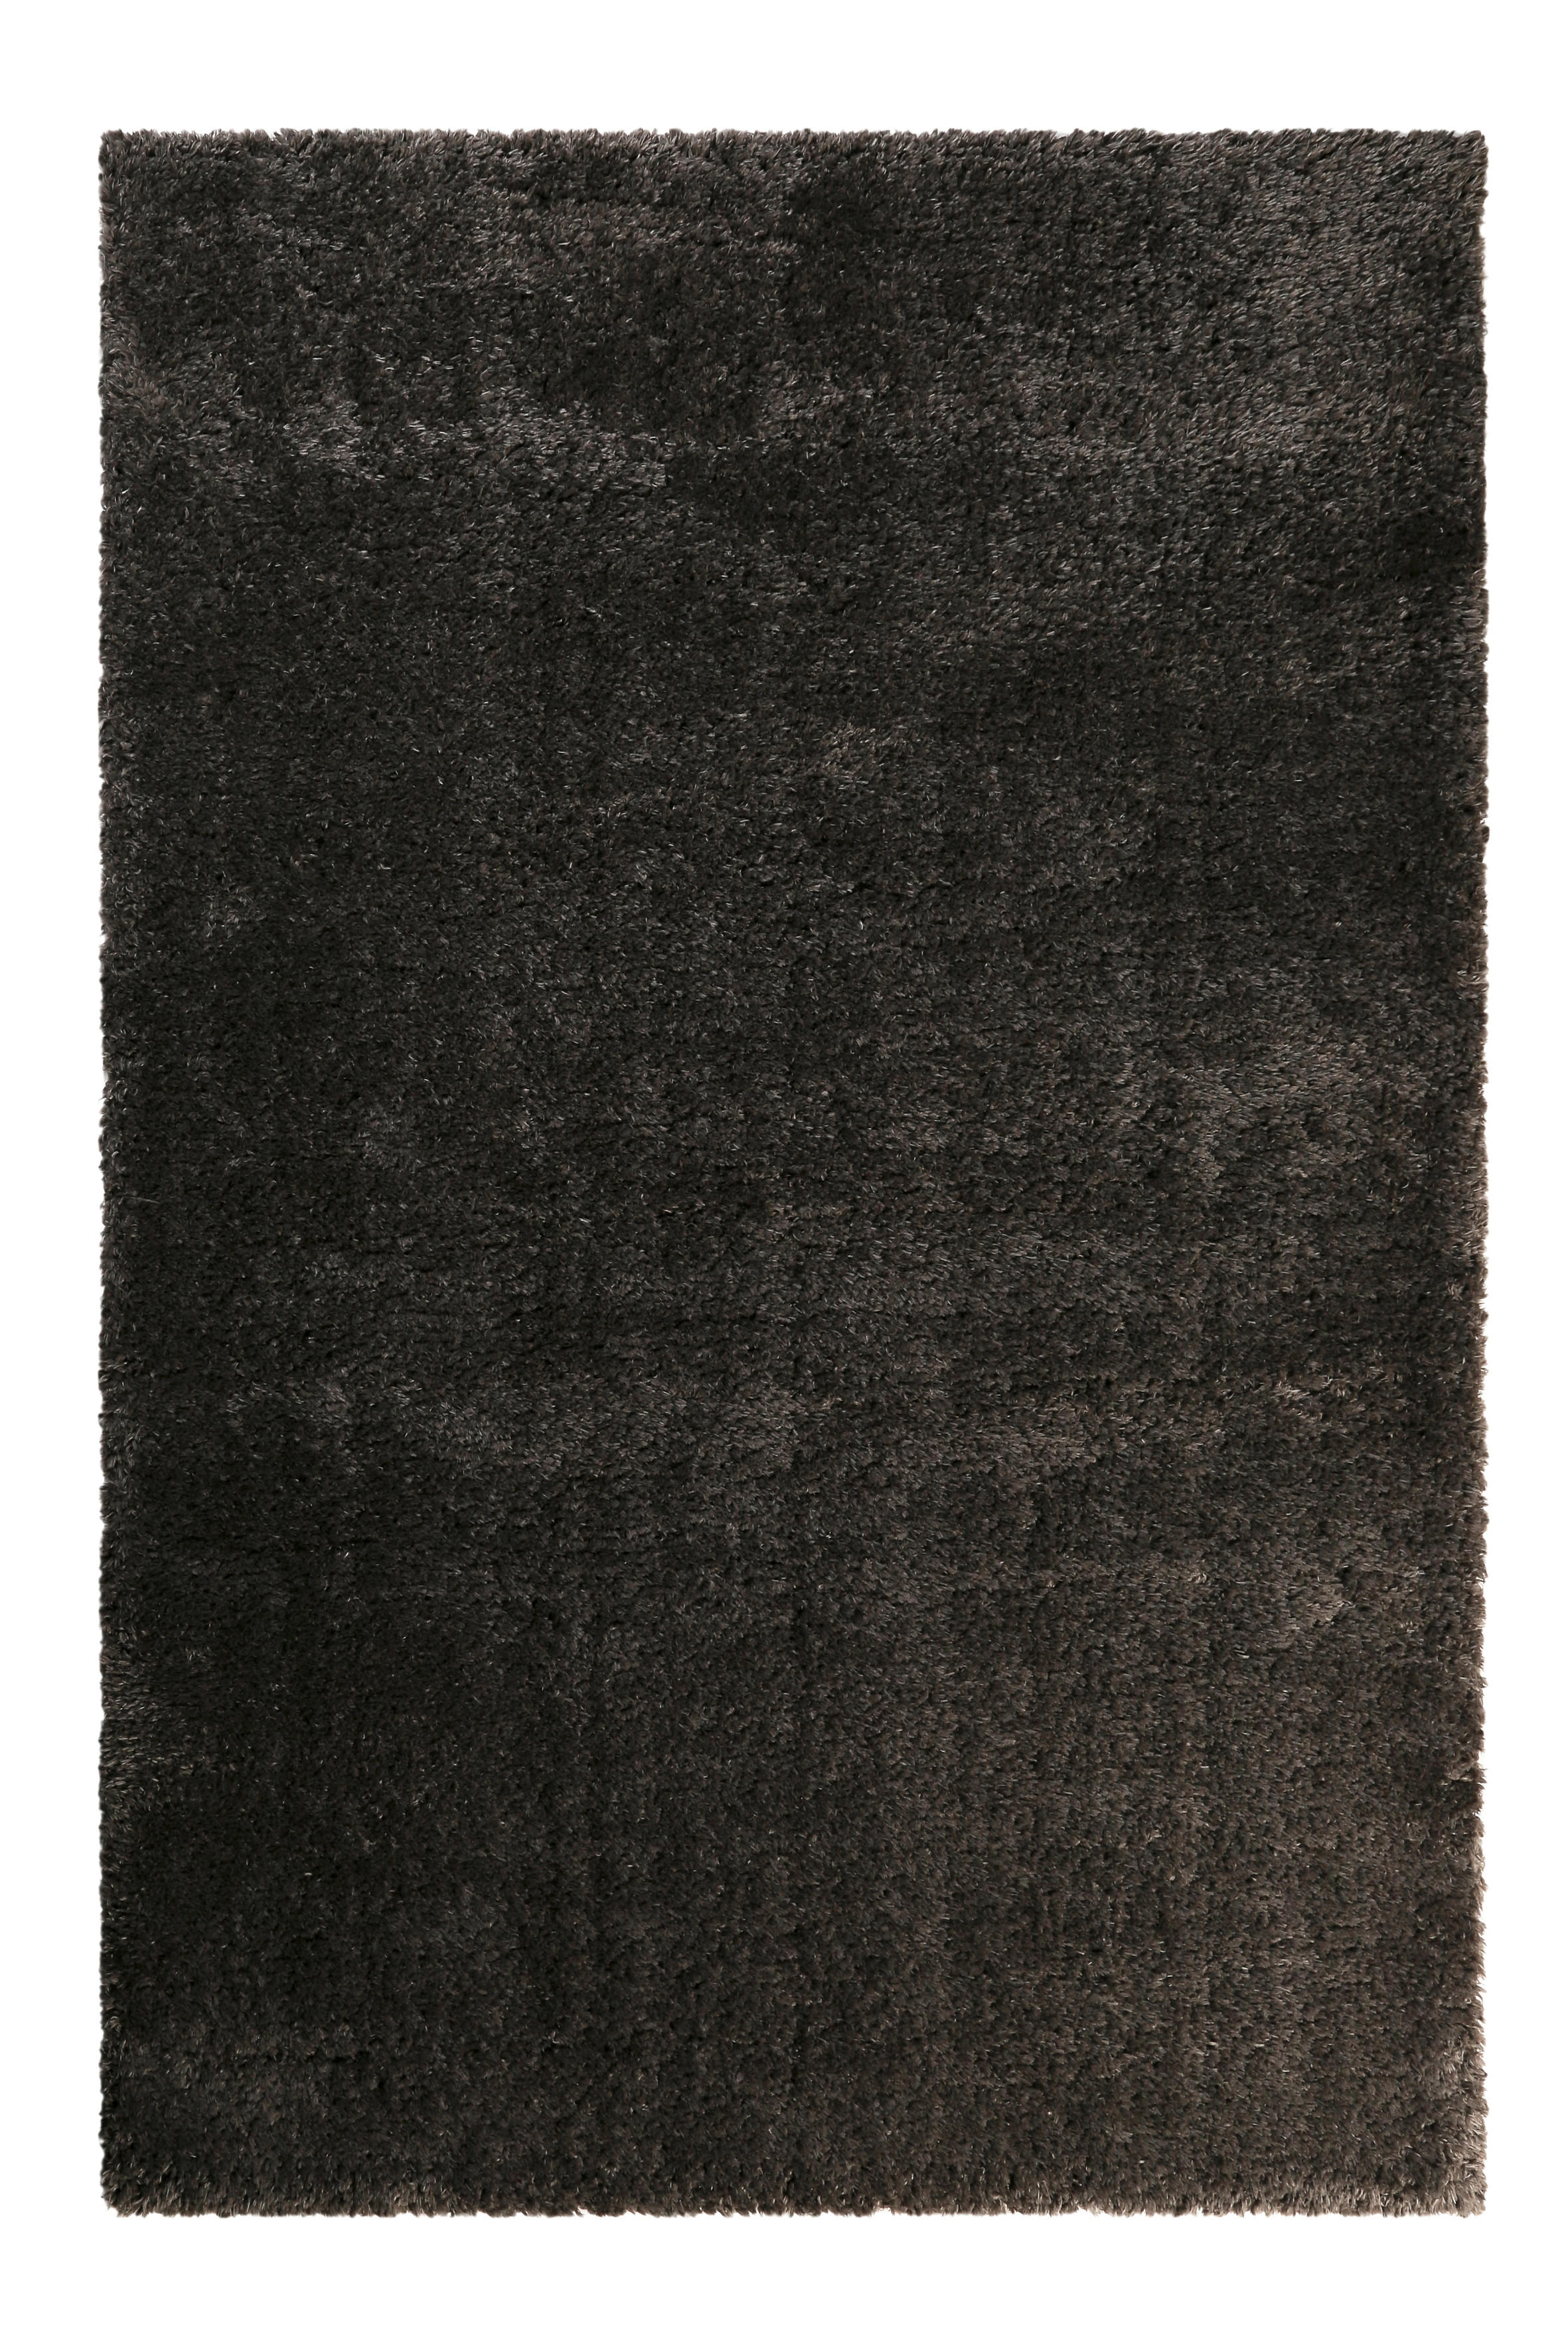 HOCHFLORTEPPICH  133/200 cm  gewebt  Anthrazit   - Anthrazit, Design, Textil (133/200cm) - Novel